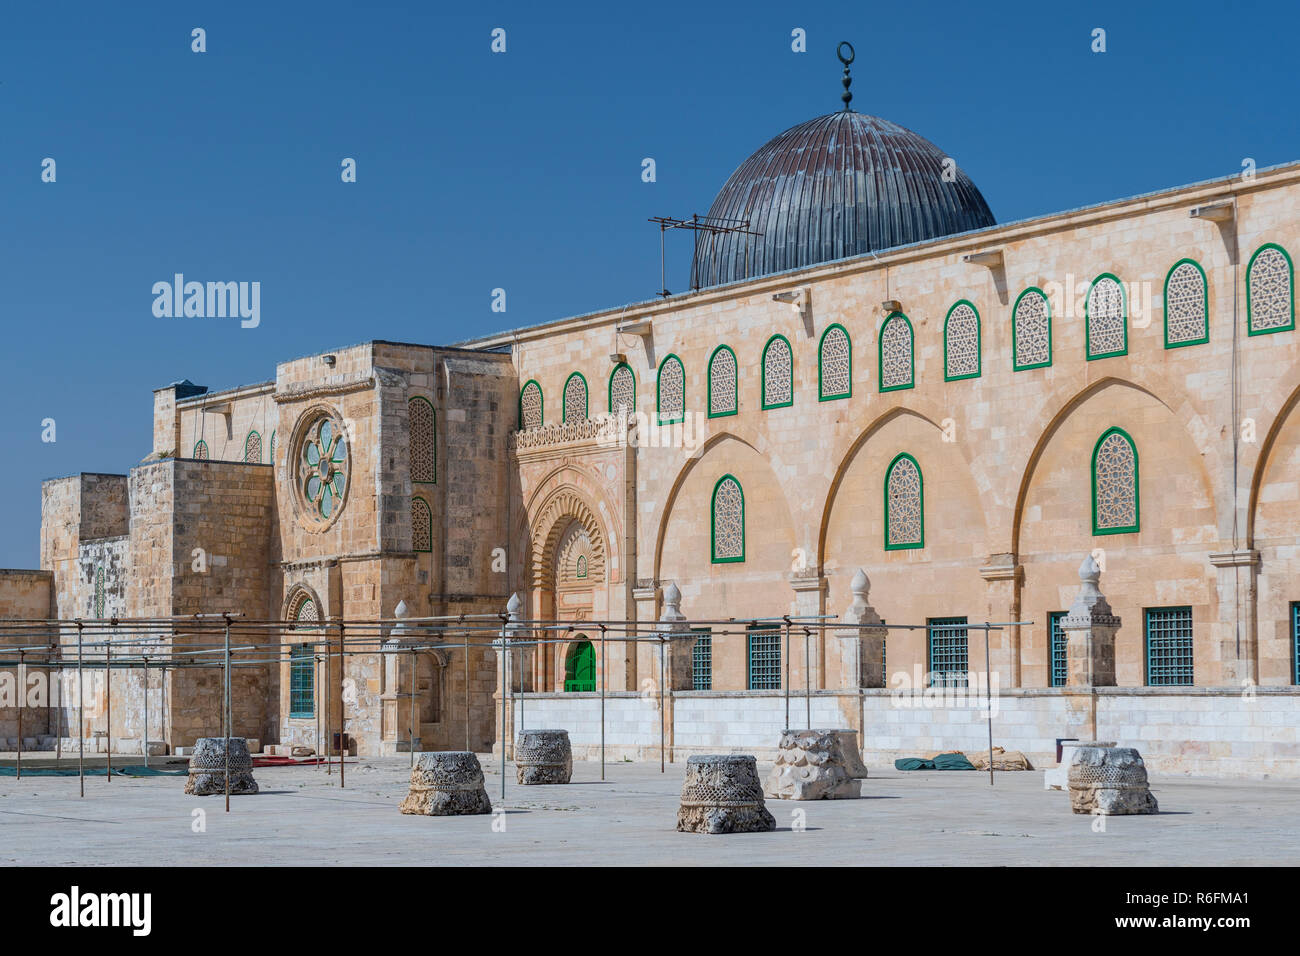 Le Culte islamique de la mosquée El Aksa au Mont du Temple (le noble sanctuaire) à Jérusalem-Est, Israël Banque D'Images